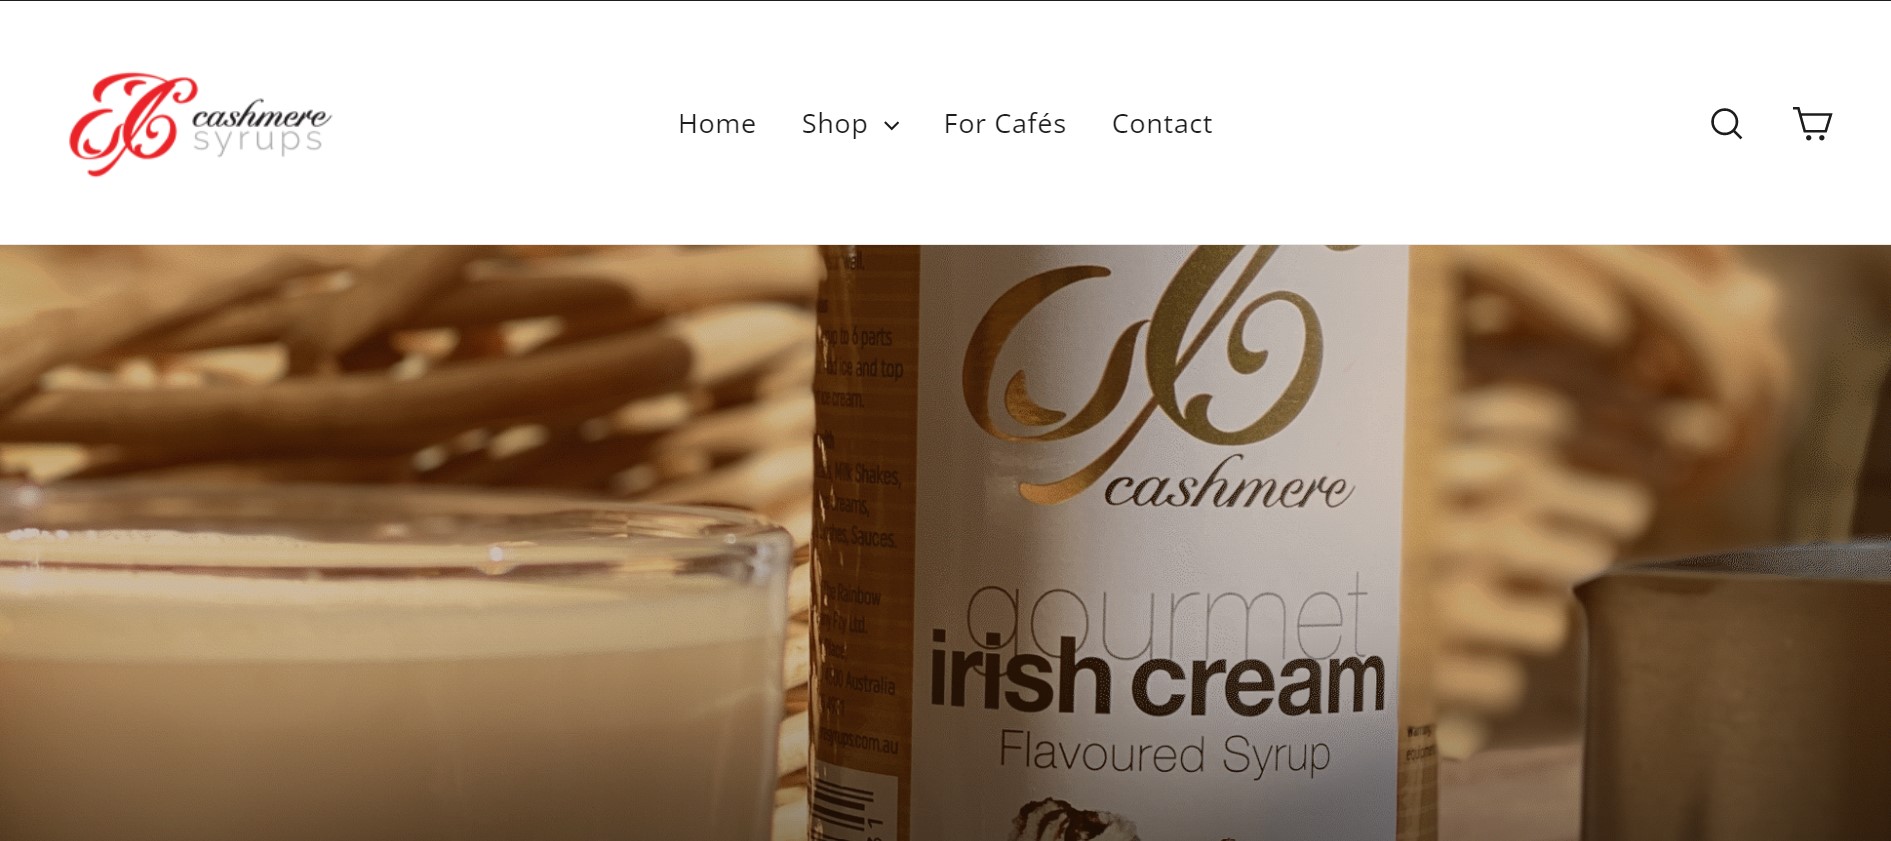 Cashmere Syrups Website Banner